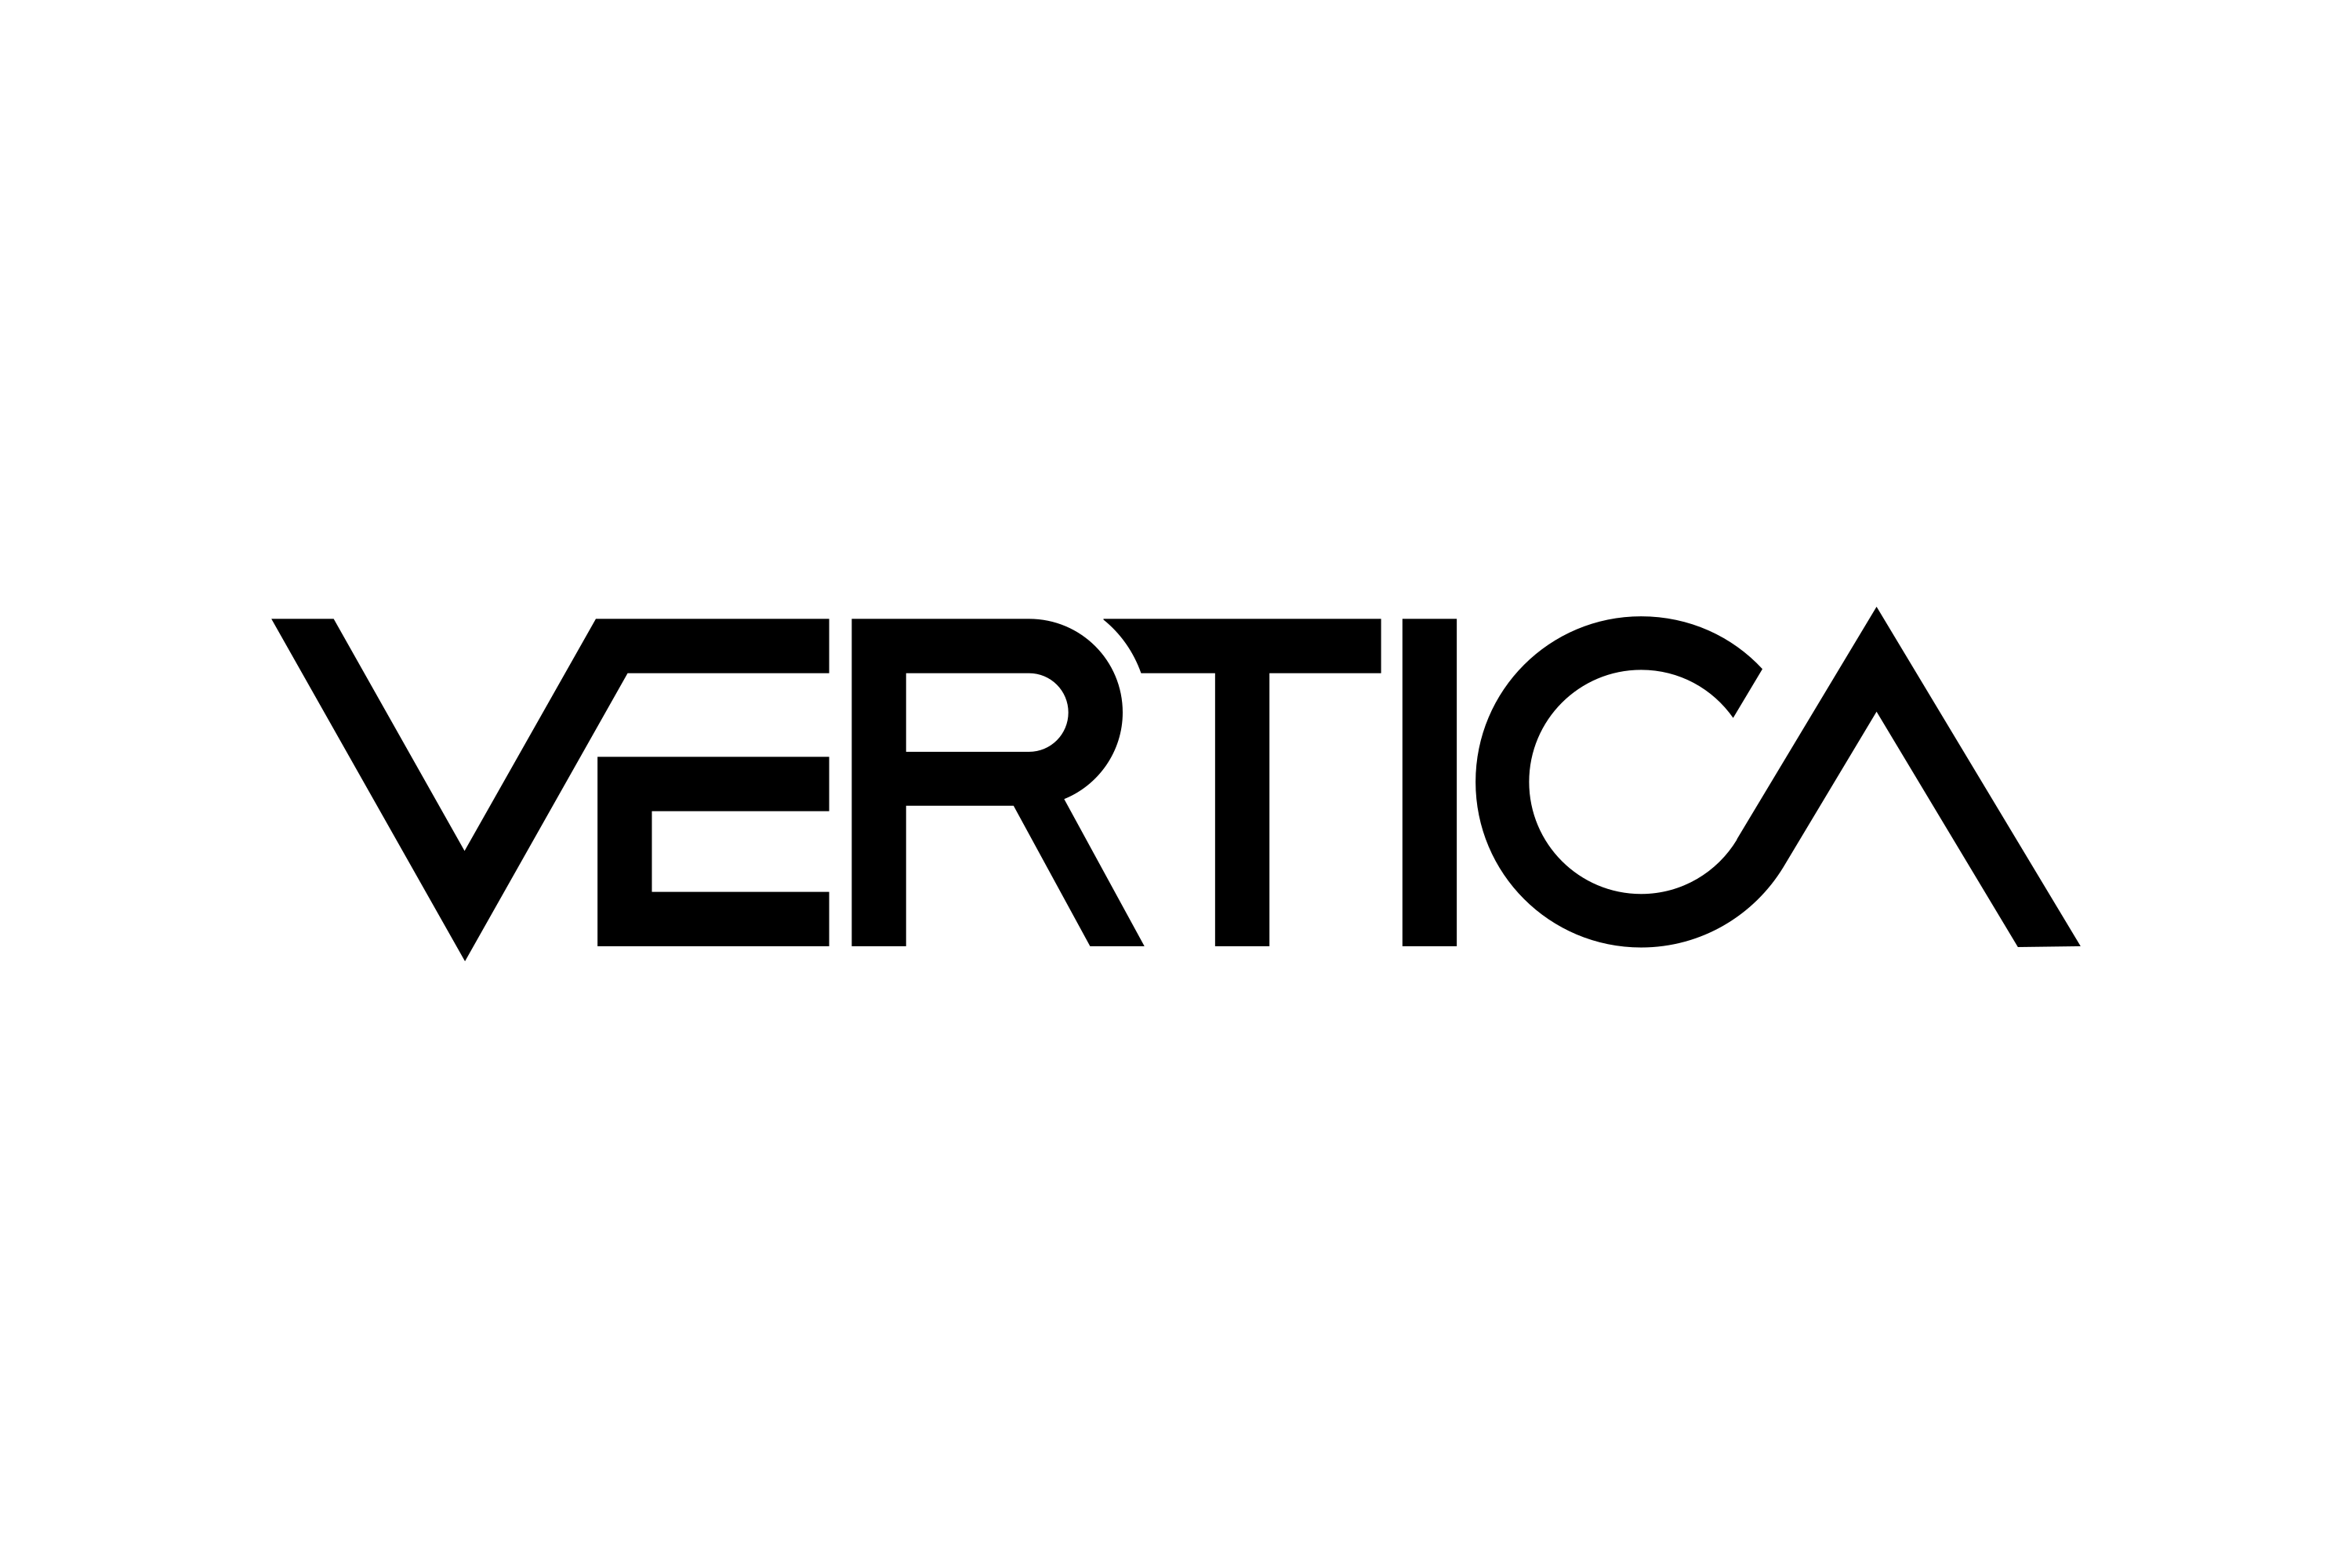 Download Vertica Logo in SVG Vector or PNG File Format - Logo.wine